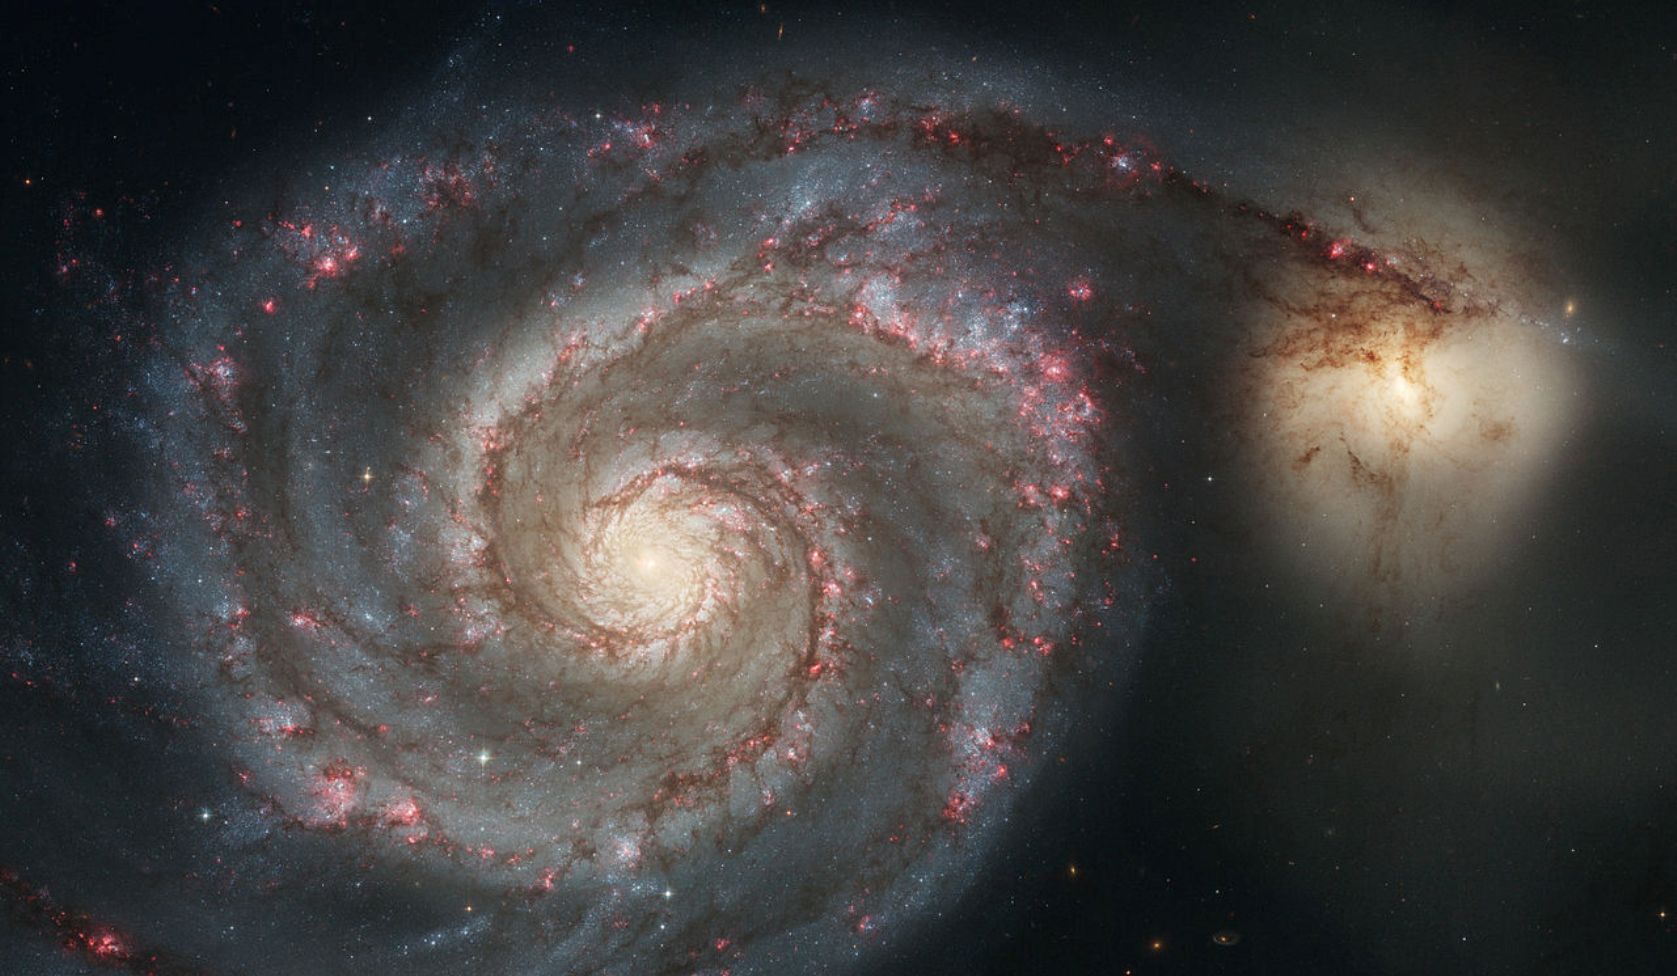 Une image provenant des observations de Hubble et montrant la galaxie spirale Messier 51. © Nasa